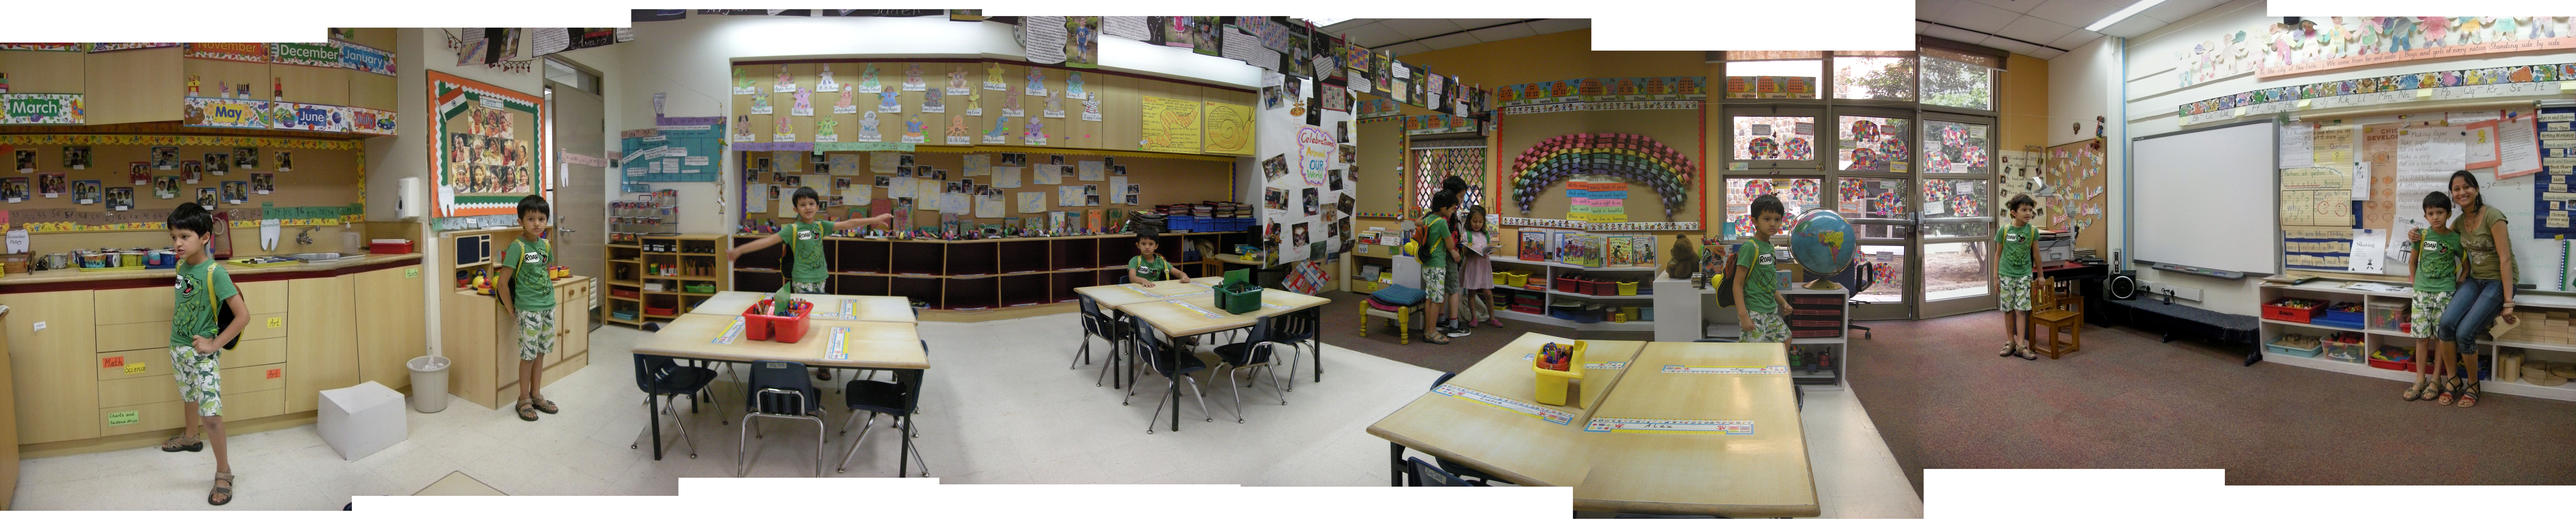 Rahil in his Kindergarten classroom (25 April 2012)